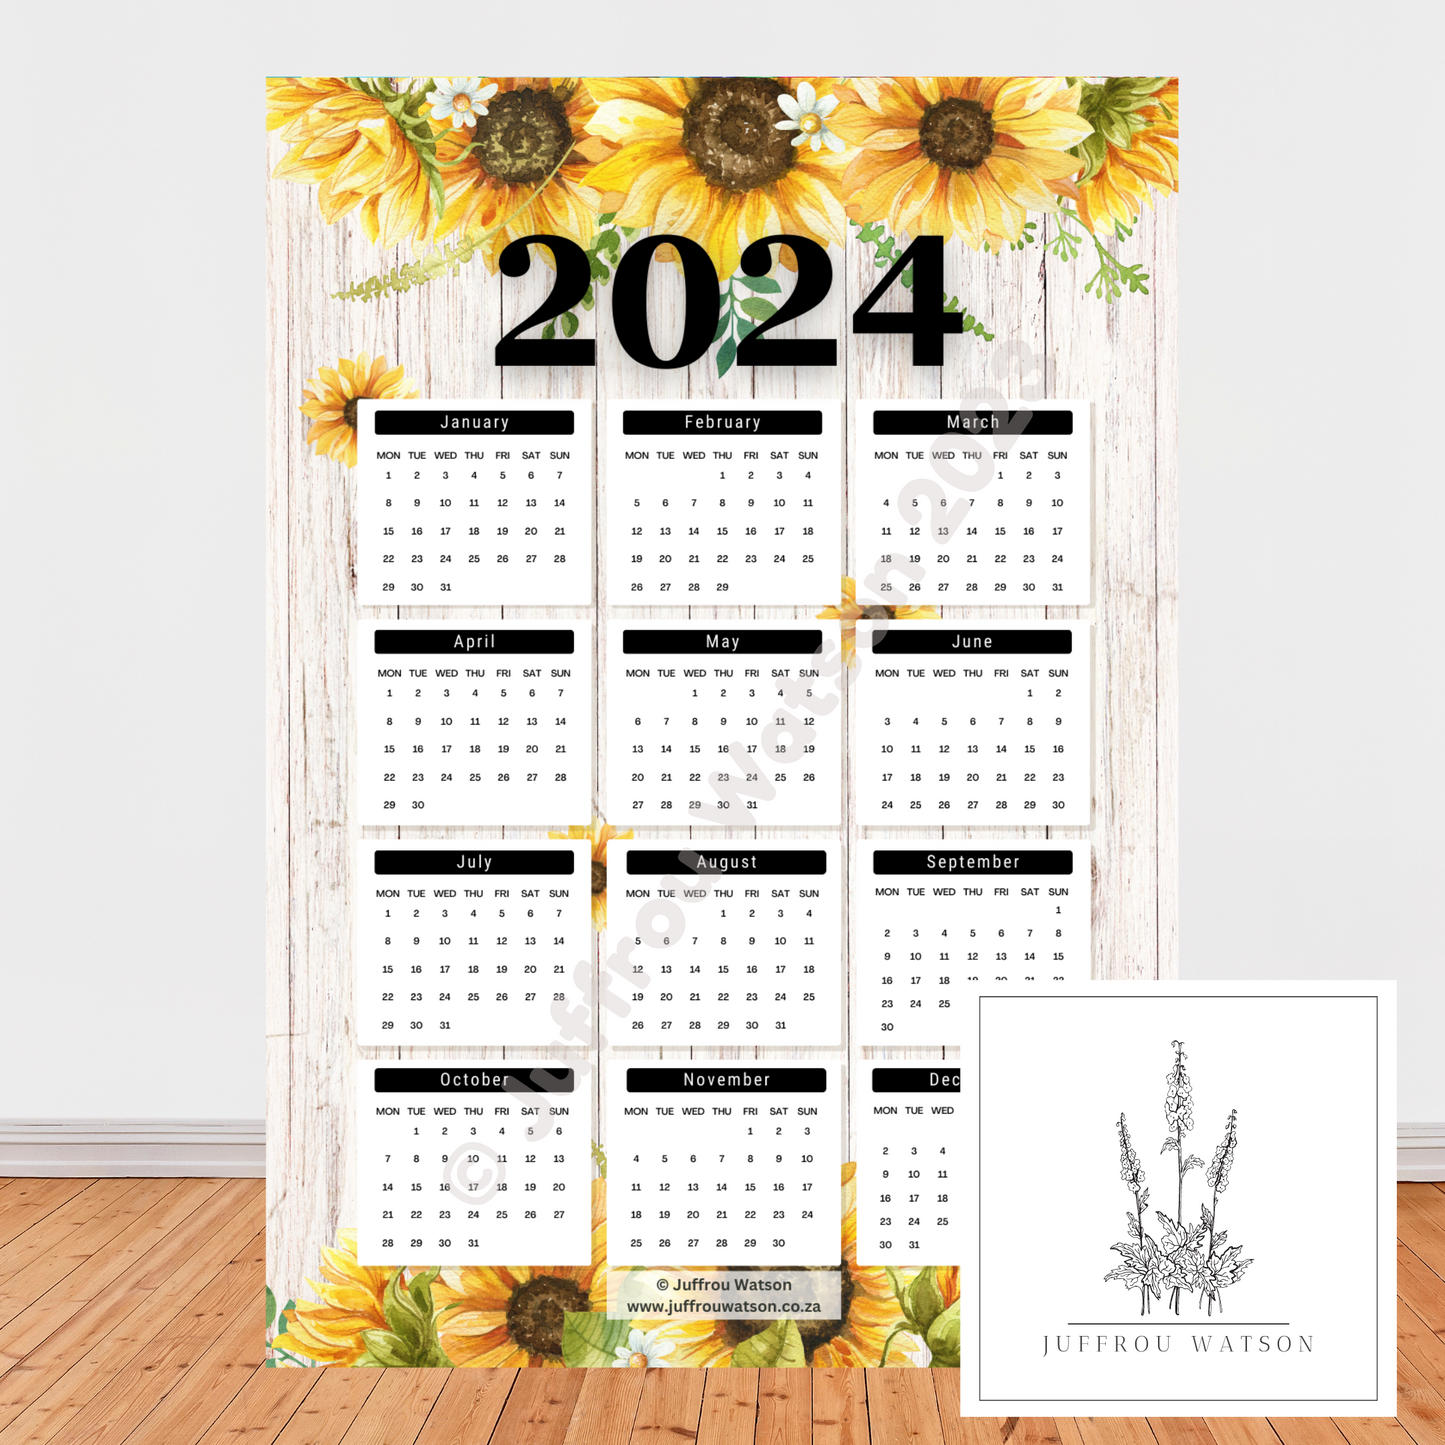 2024 Wall Calendar - Sunflowers